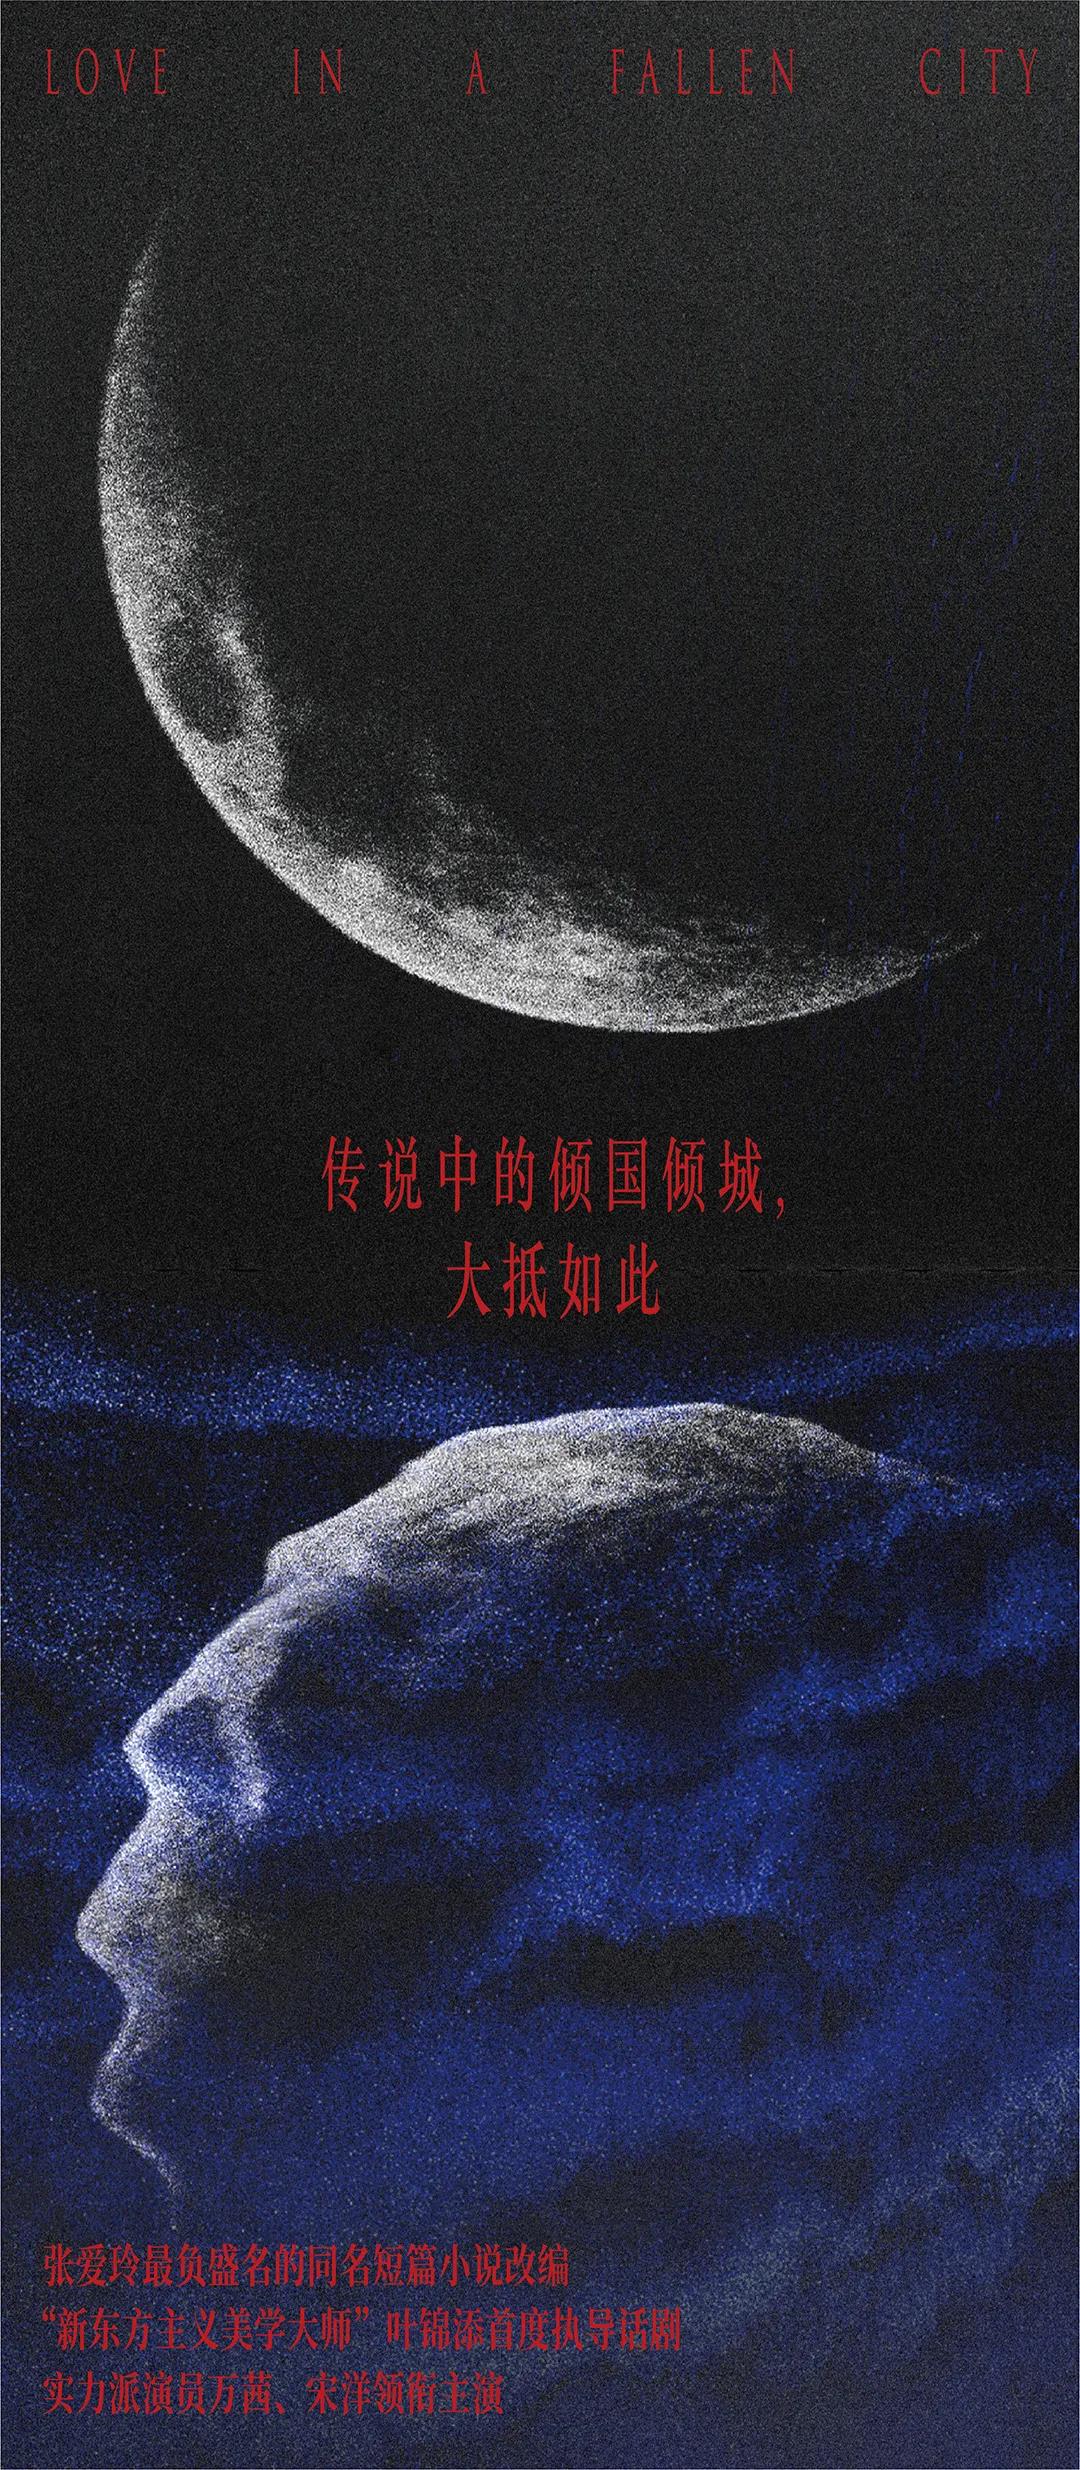 2021舞台剧《倾城之恋》杭州站剧情简介/门票价格/演出时间